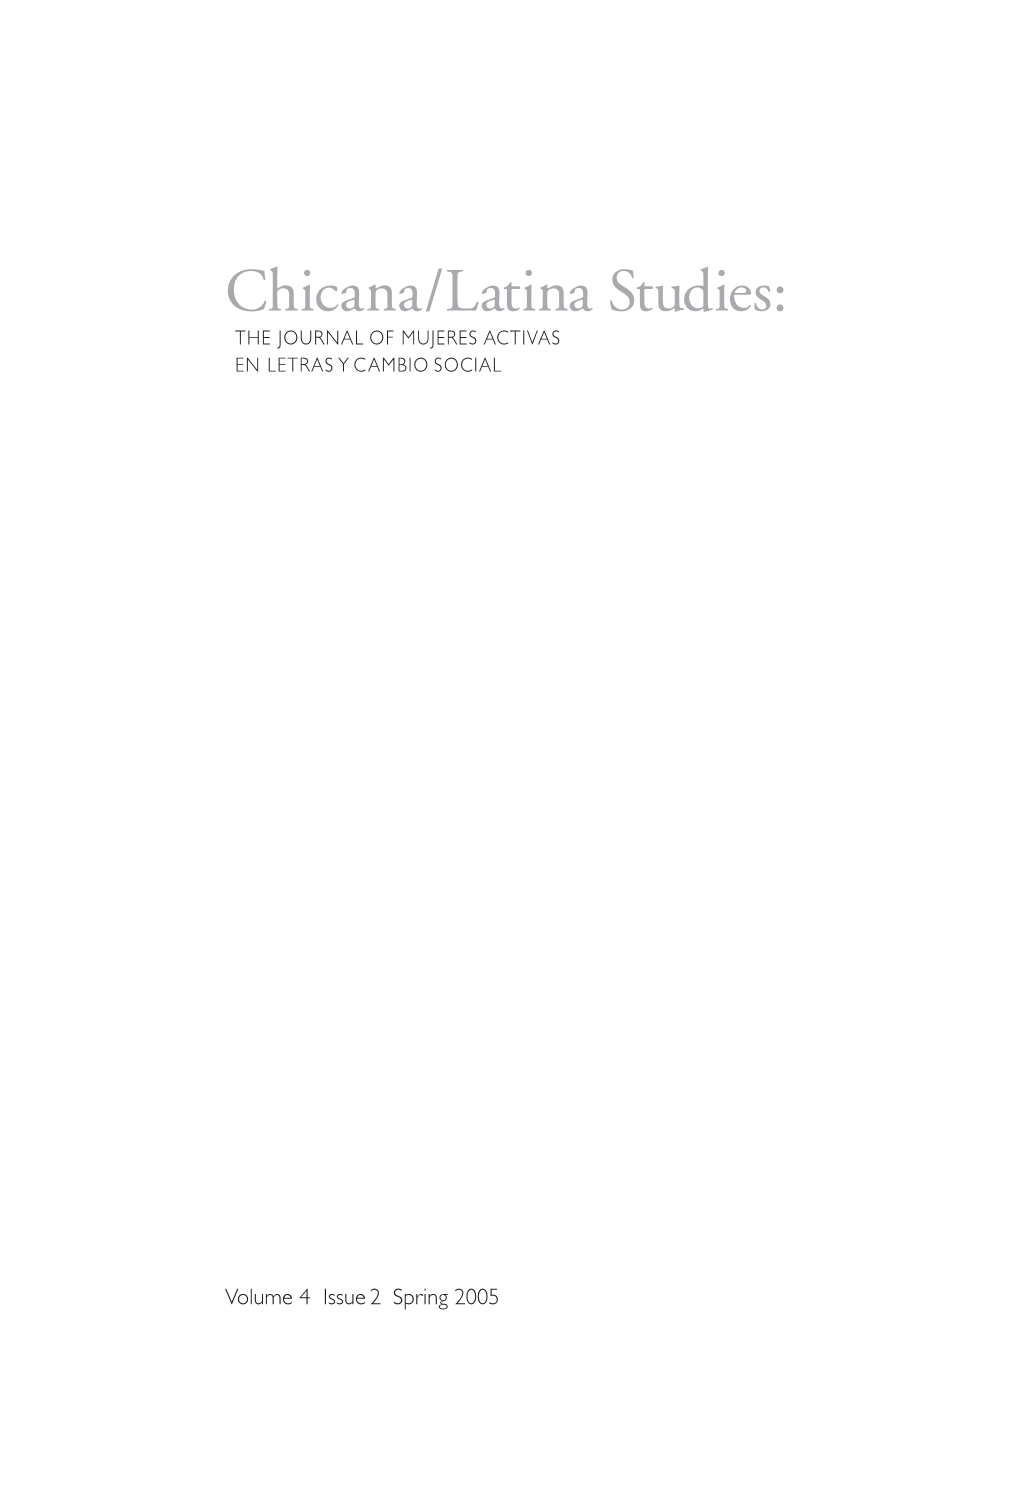 Chicana/Latina Studies: the JOURNAL of MUJERES ACTIVAS EN LETRAS Y CAMBIO SOCIAL